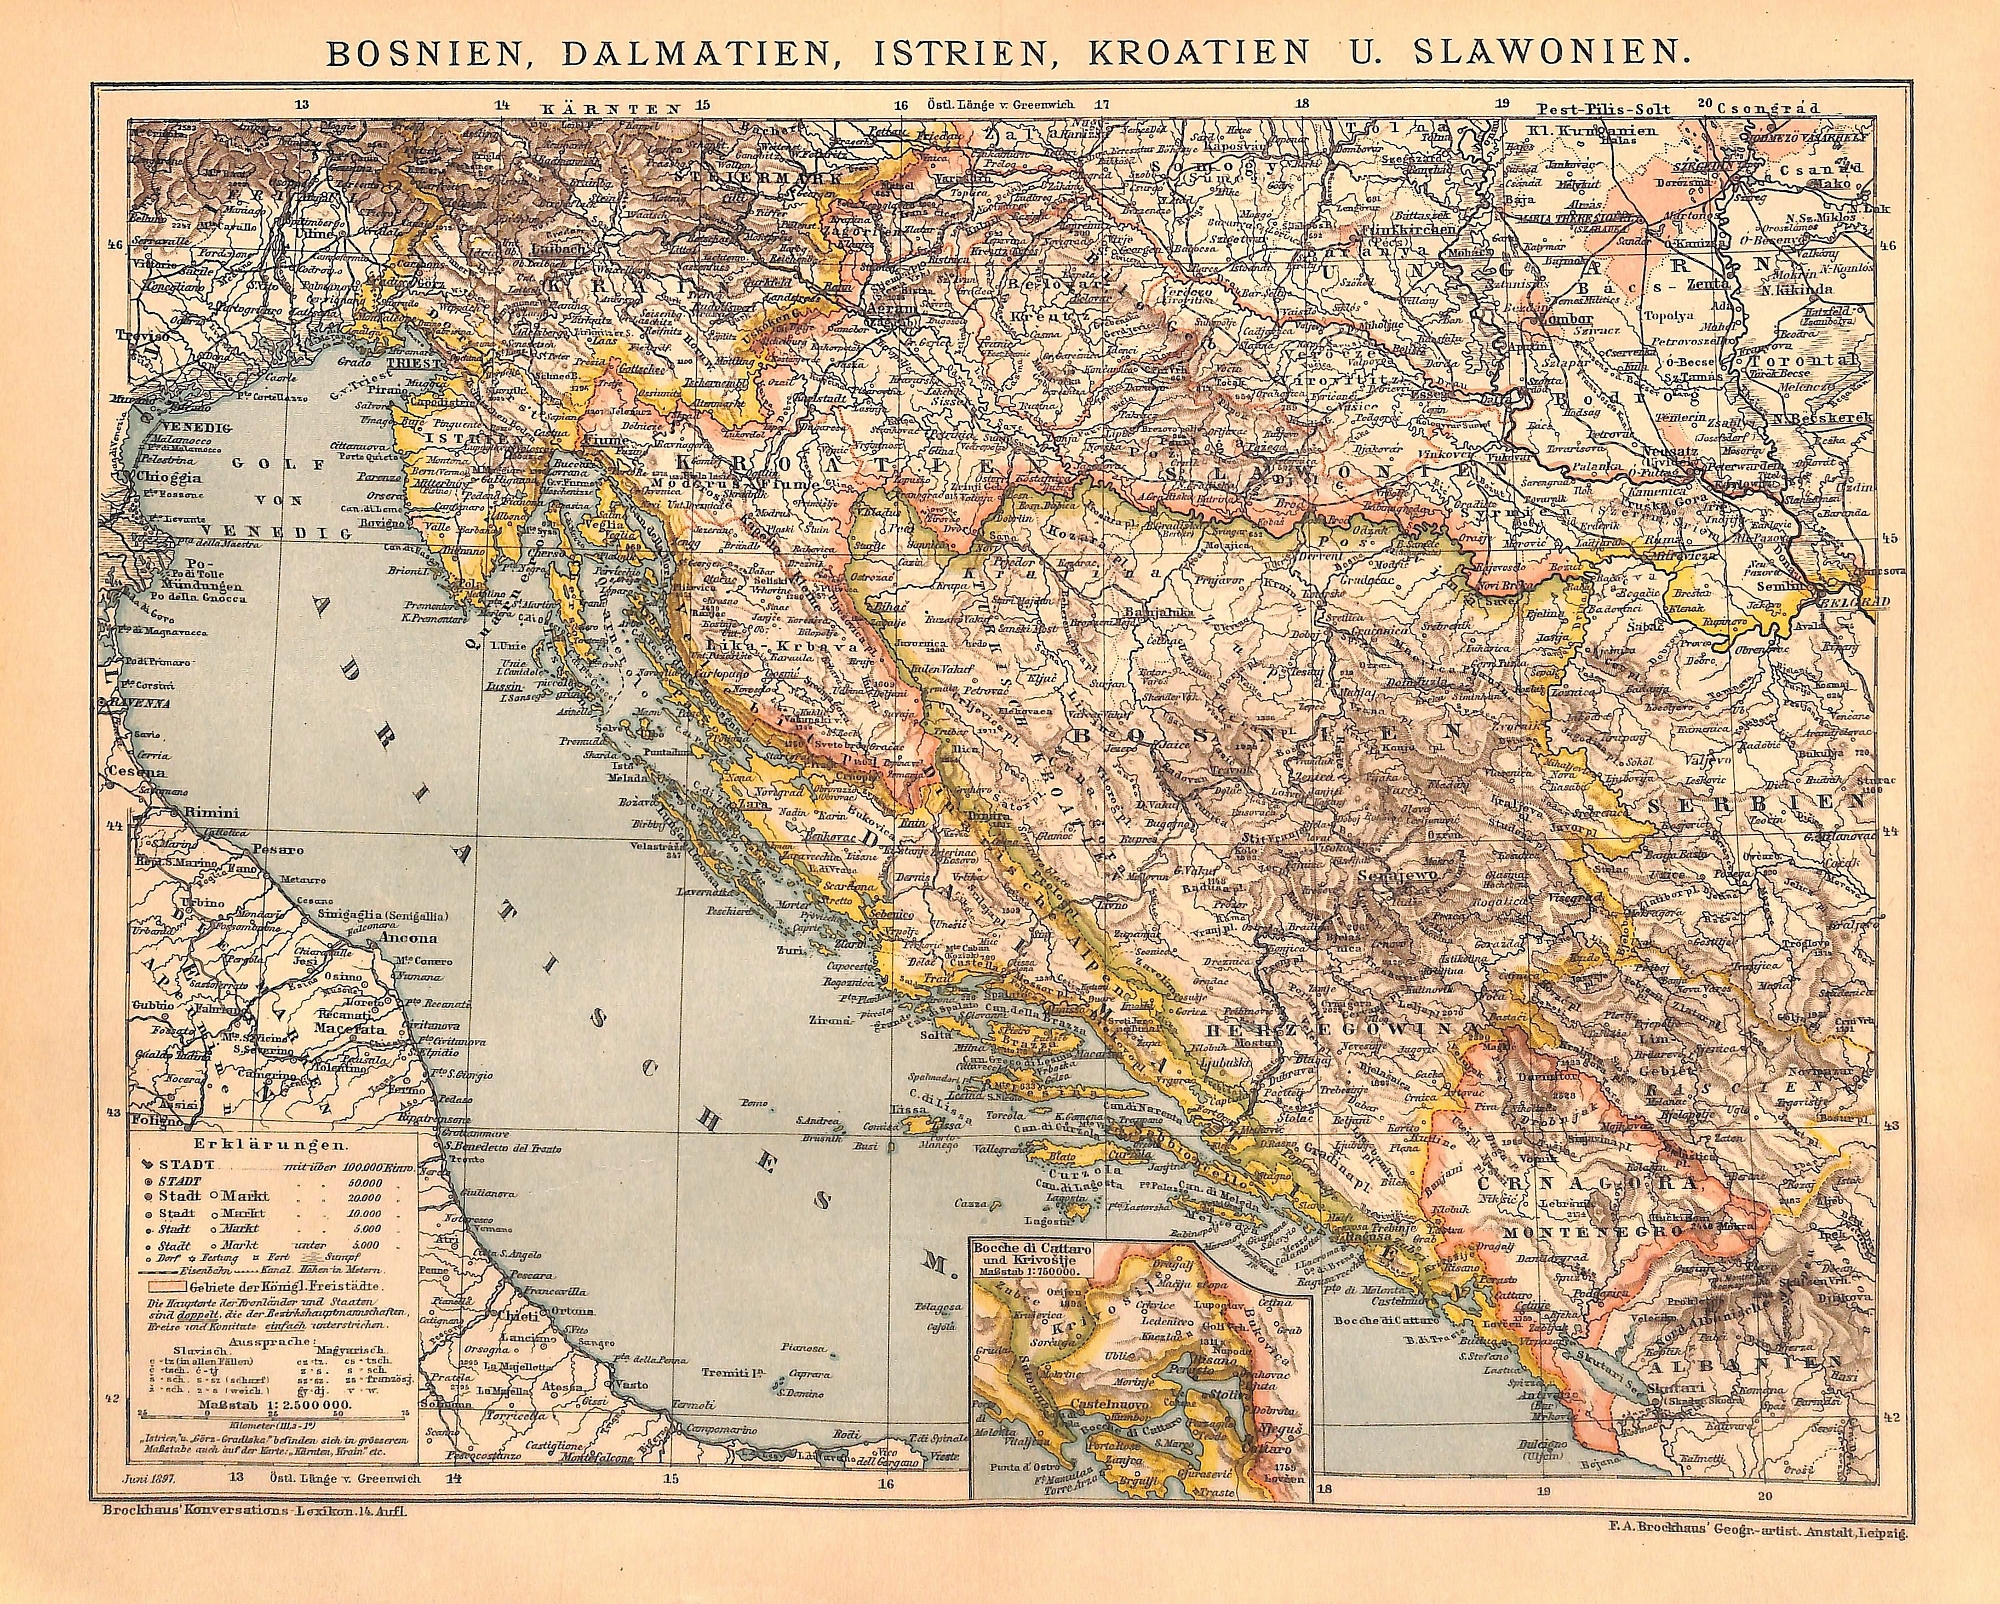 Bosnia, Dalmatia, Istria, Croatia & Slovenia, Map, 1896